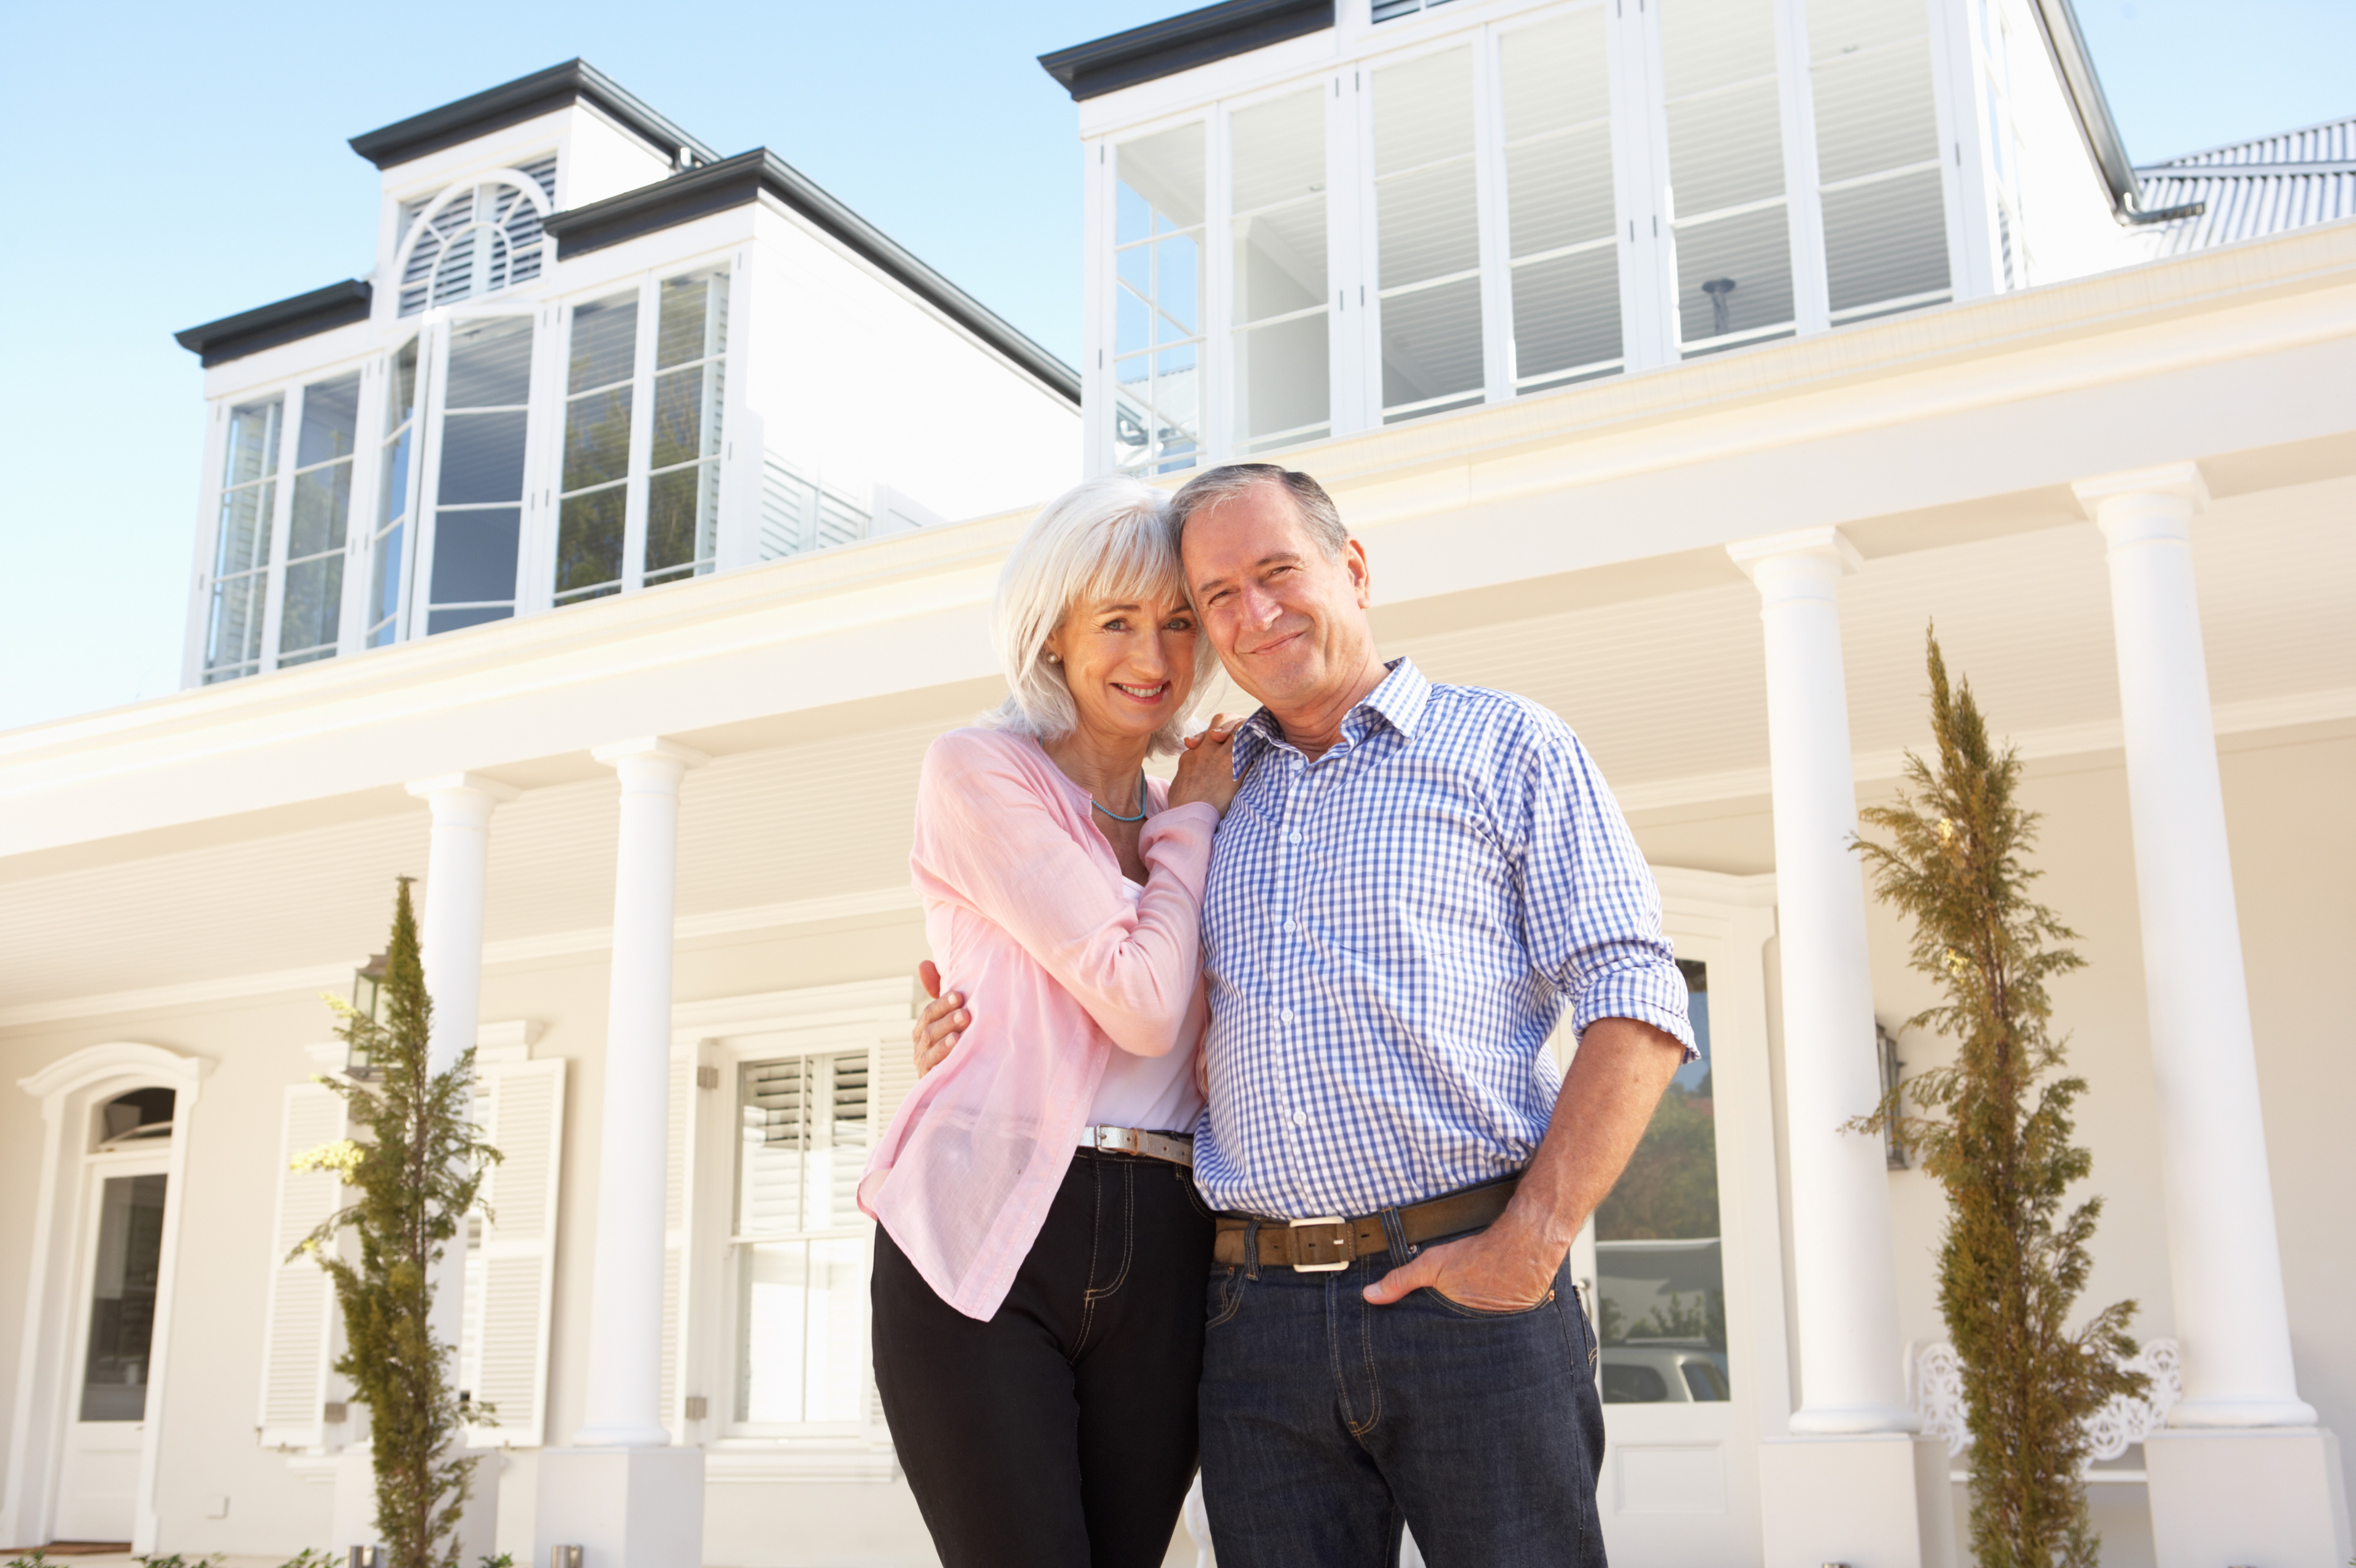 Immobilienrente zur Sicherung von Wohneigentum im Alter